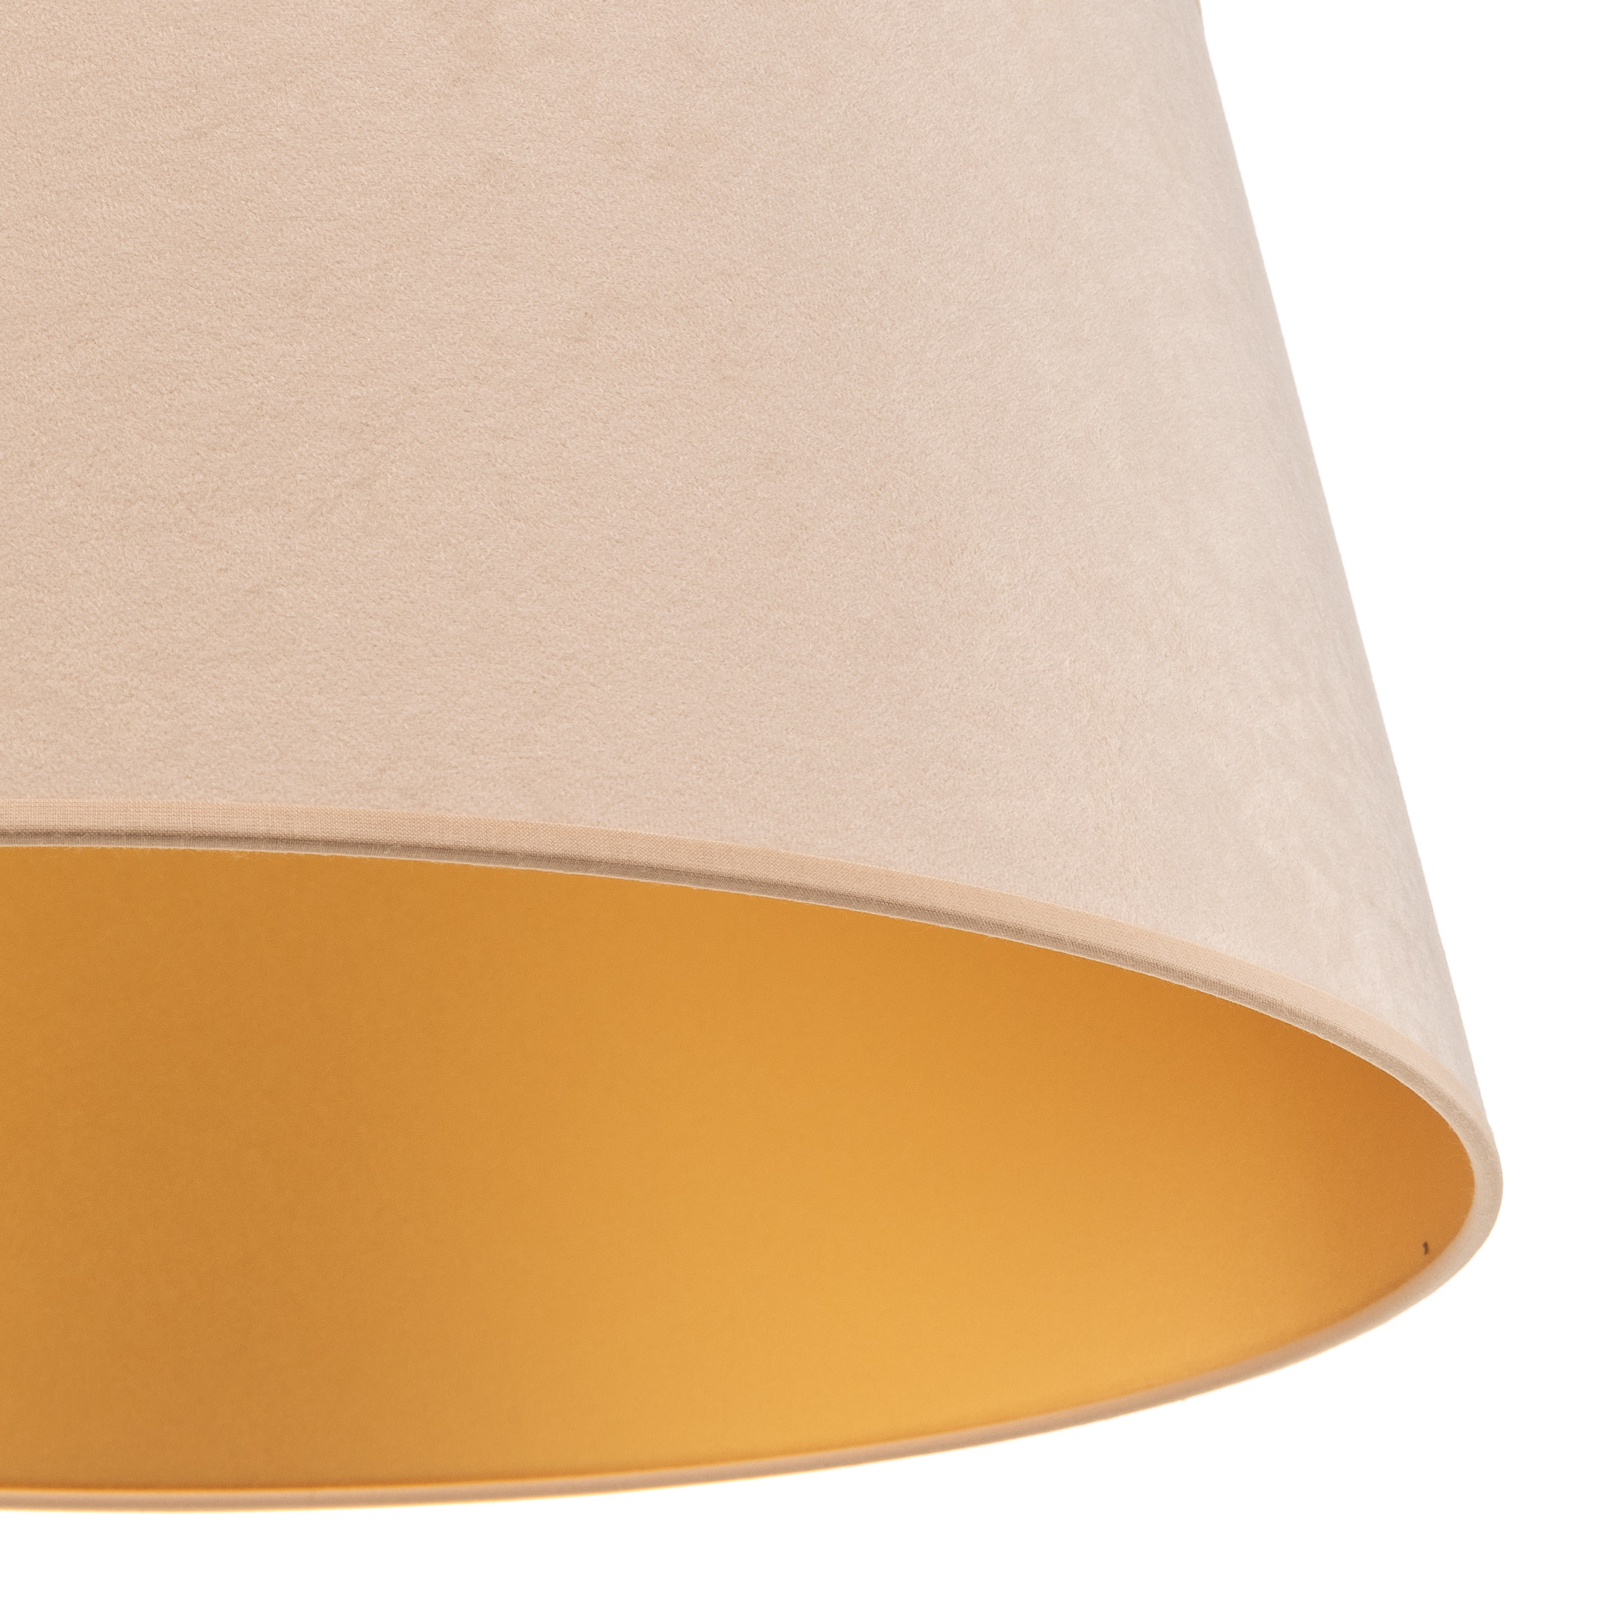 Cone lampshade height 22.5 cm, ecru/gold